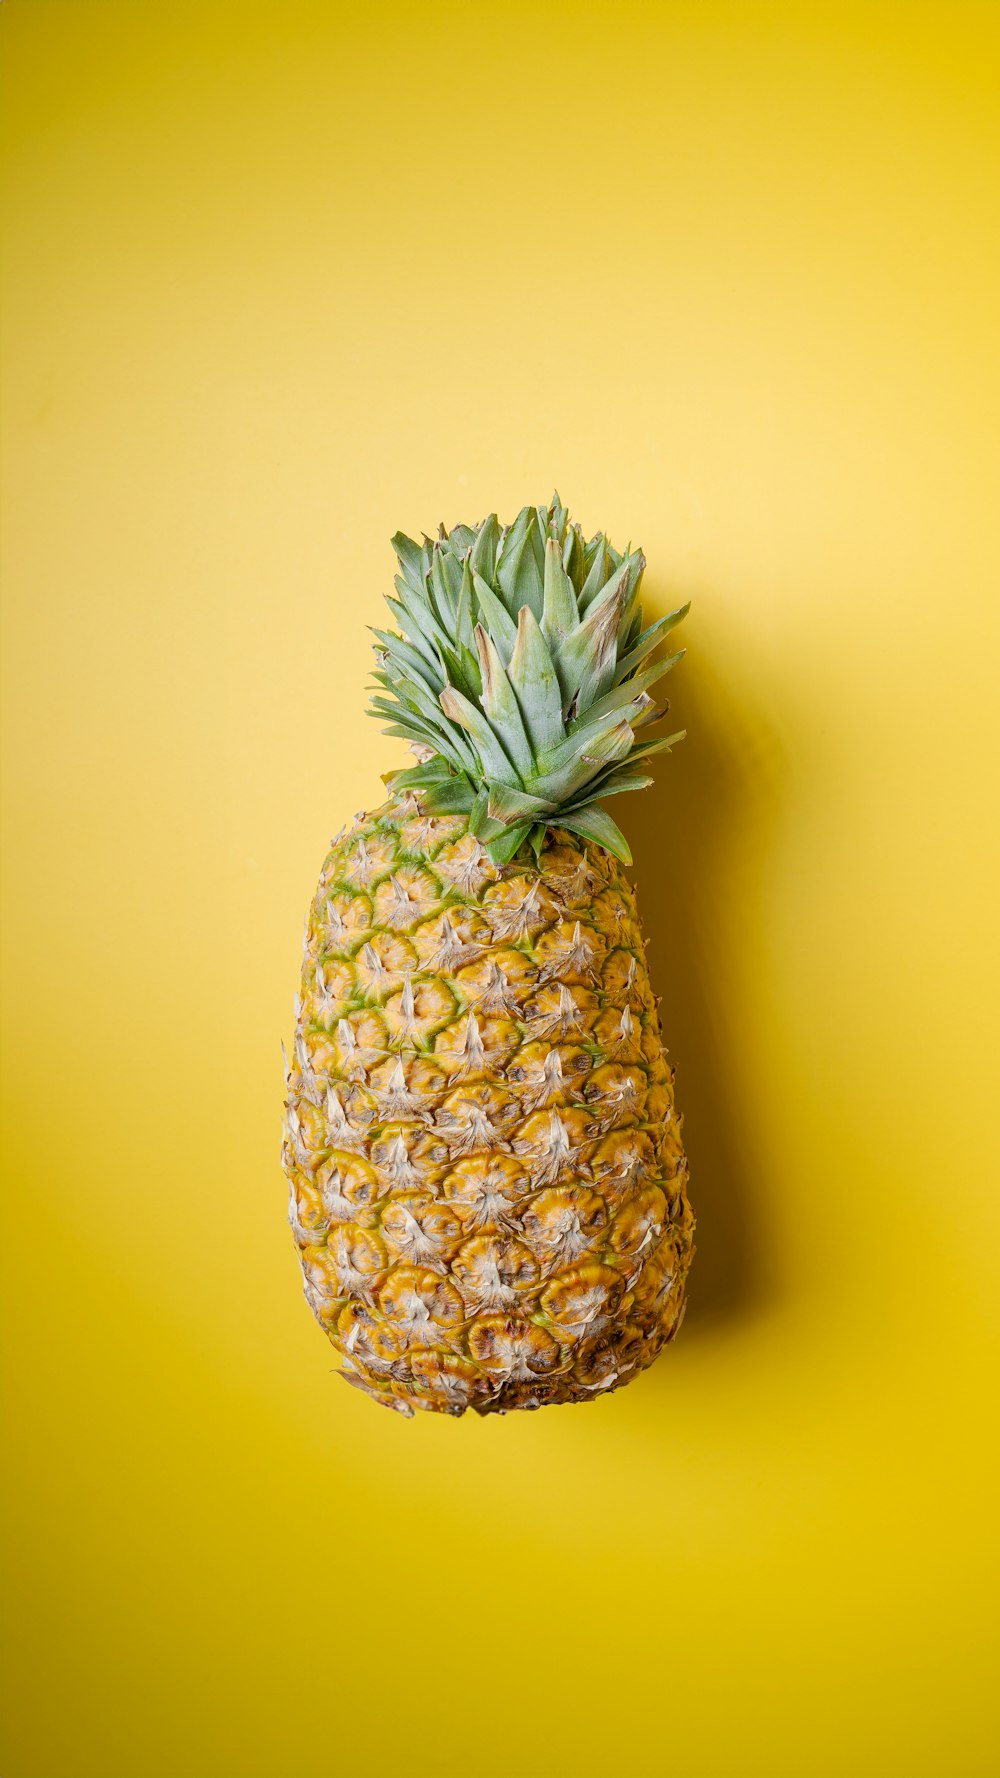 eine Ananas, die auf einer gelben Oberfläche sitzt